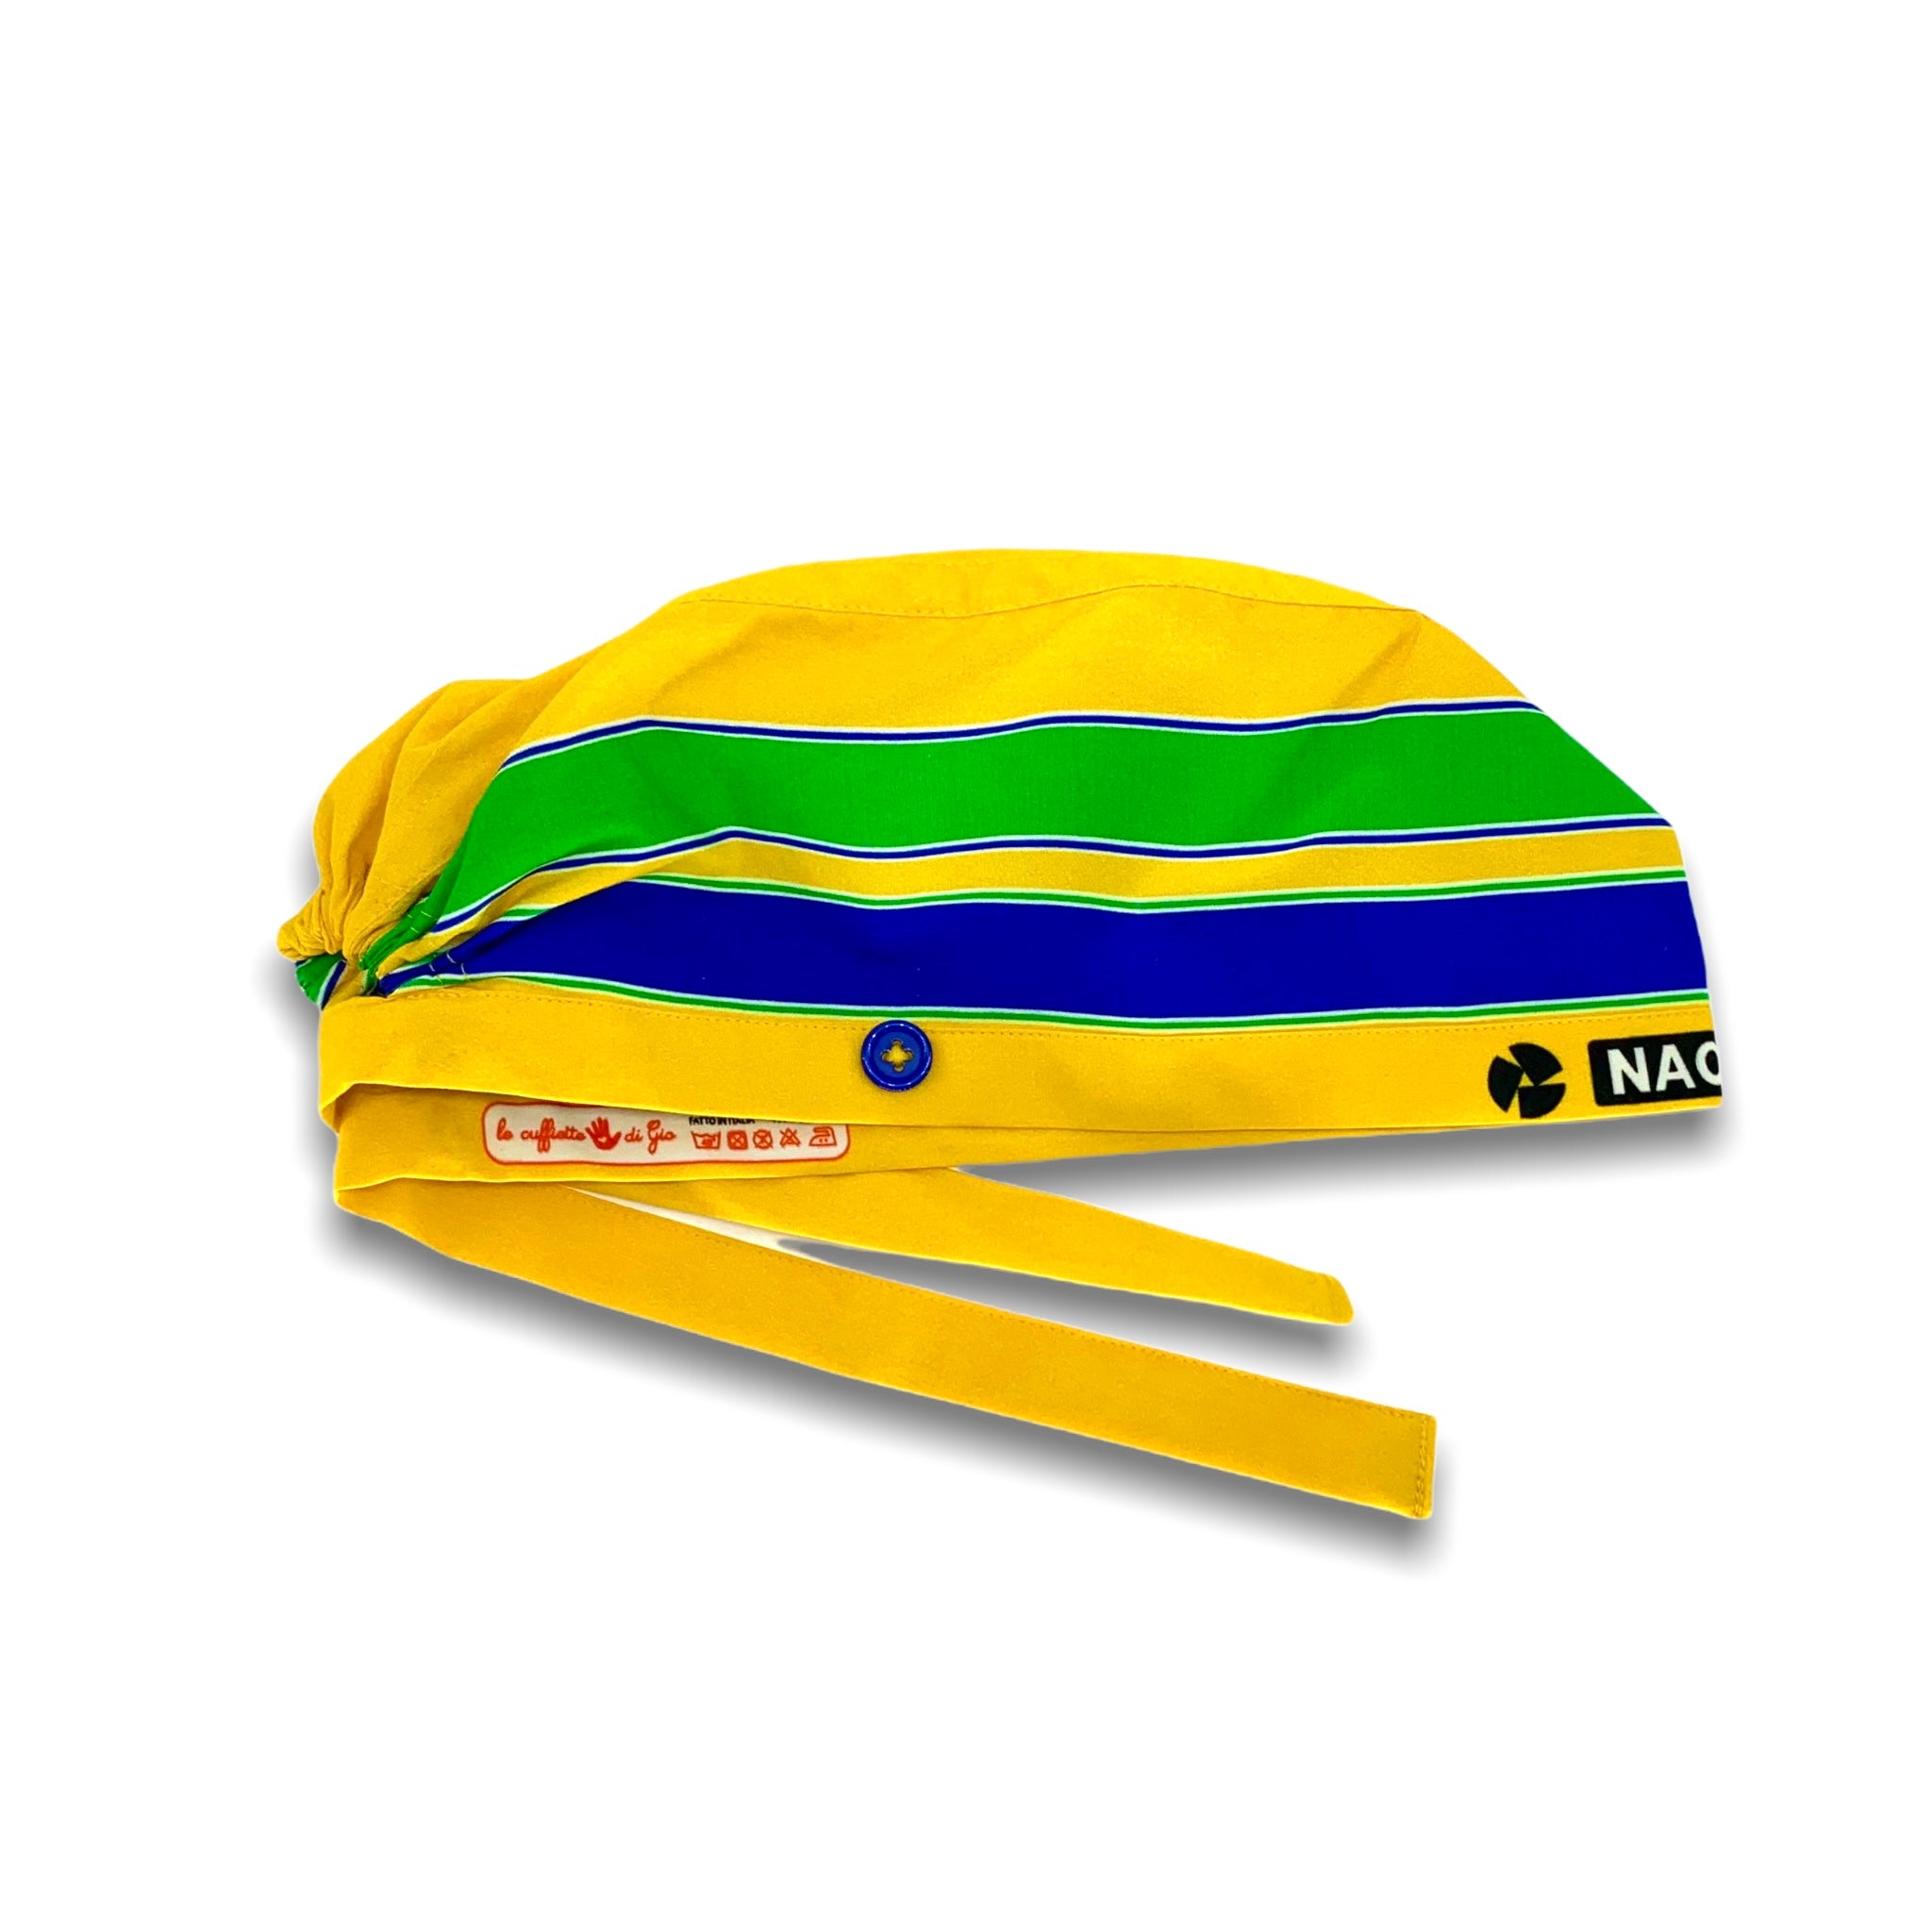 La cuffietta che riproduce il casco del mitico Ayrton Senna